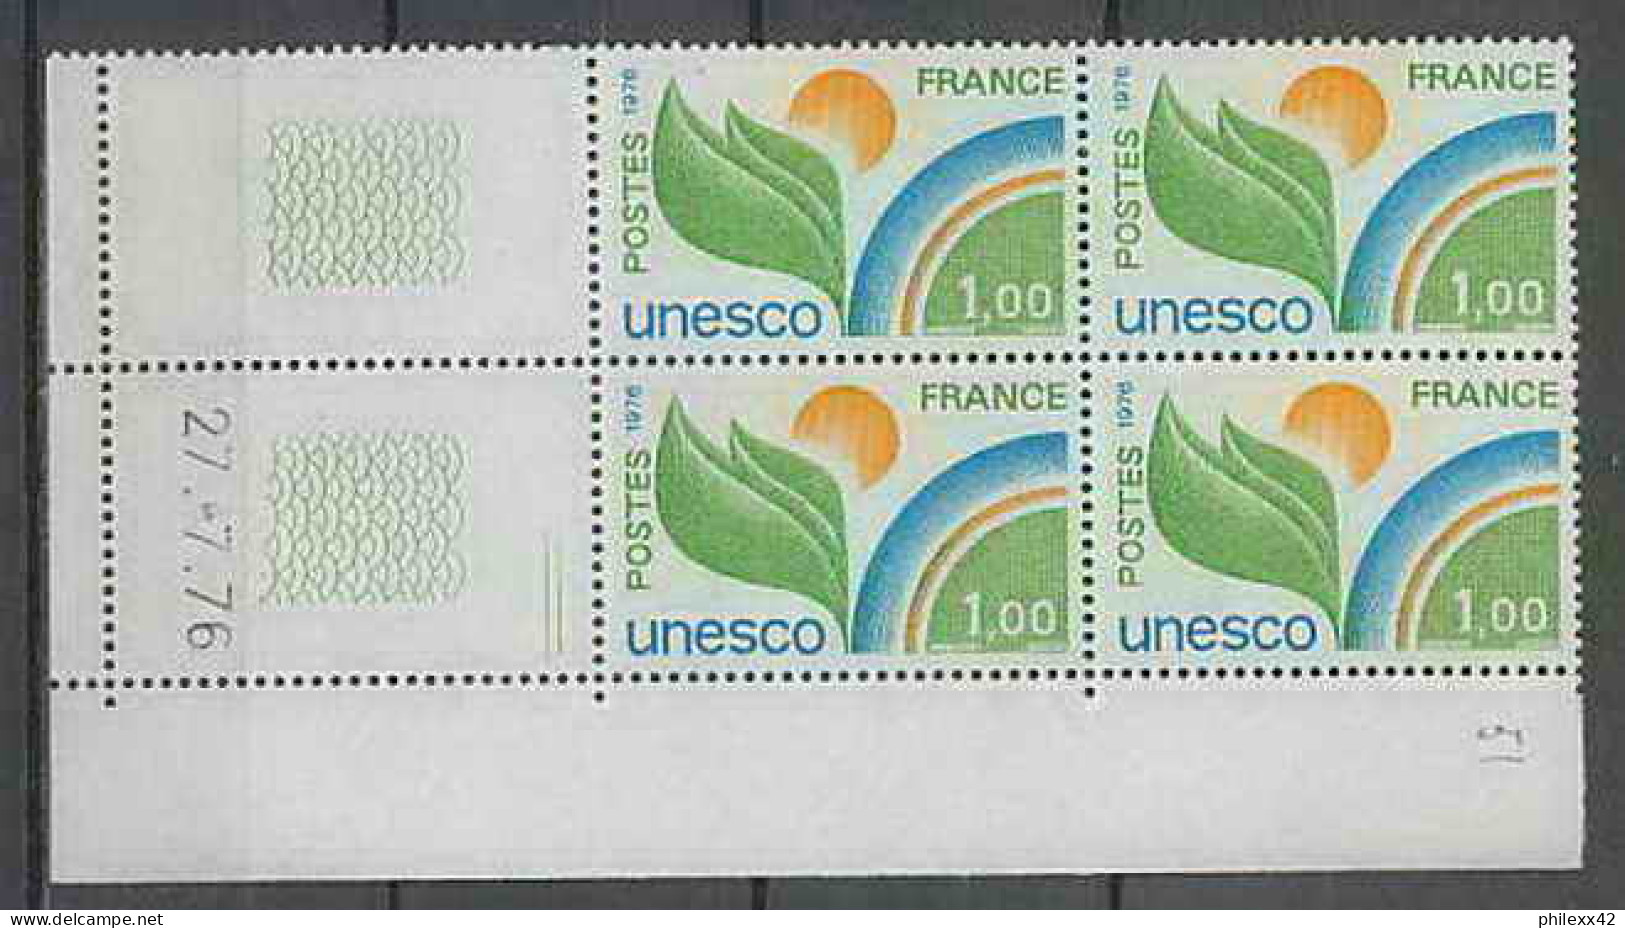 1308 - France - Coin Daté TB Neuf ** Service Unesco N°51 Date 27/7/1976 2 Traits  - Dienstzegels